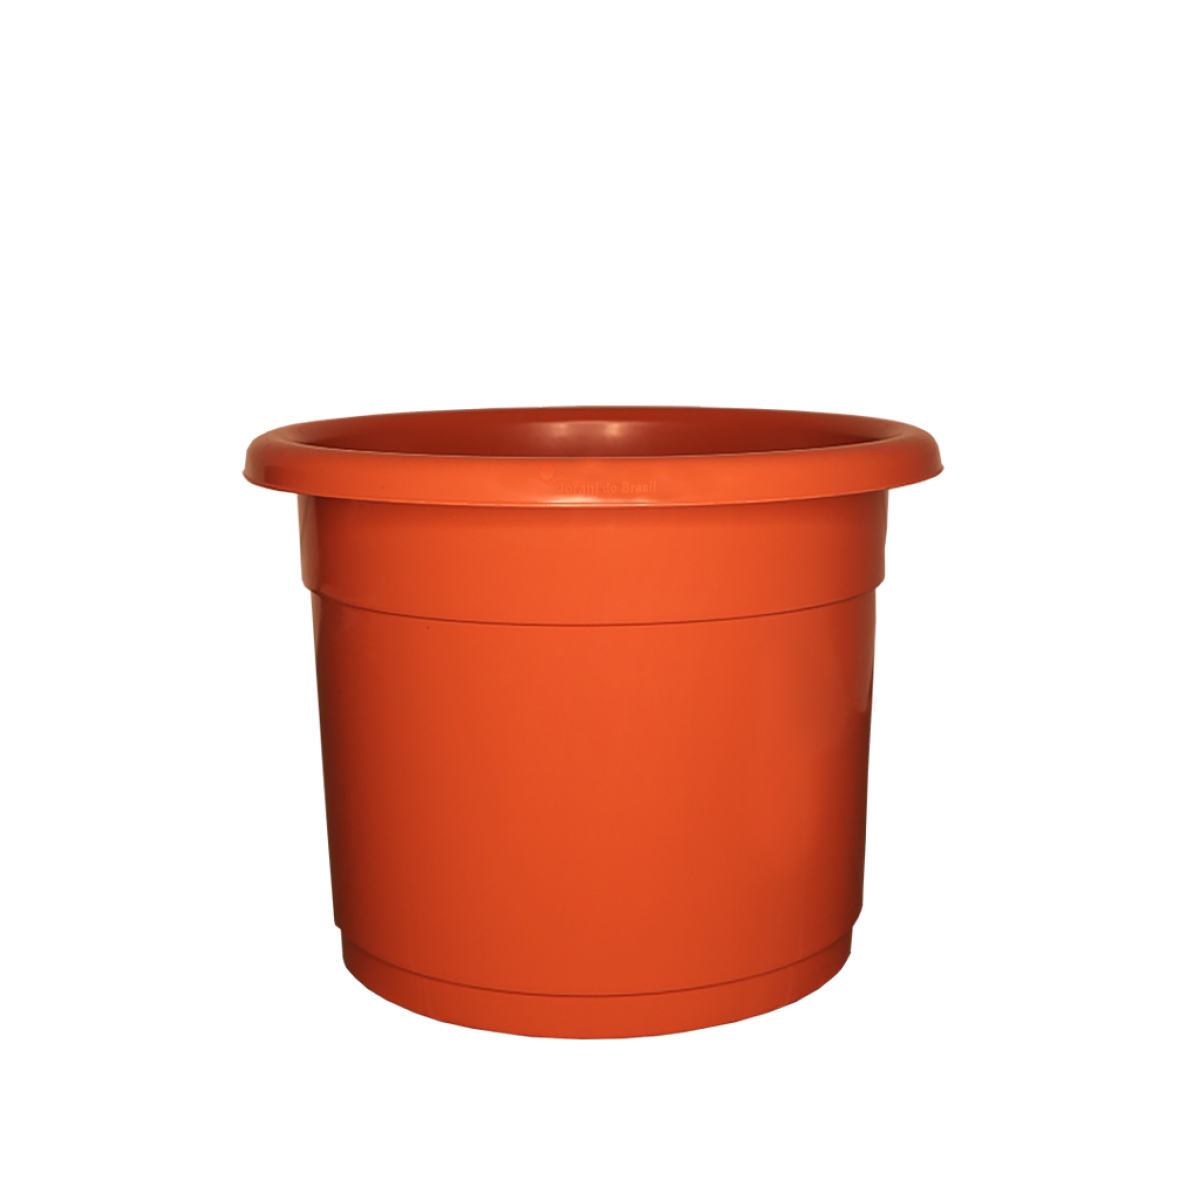 Premium Vase Nº31 - Ceramic - 11.3 liters